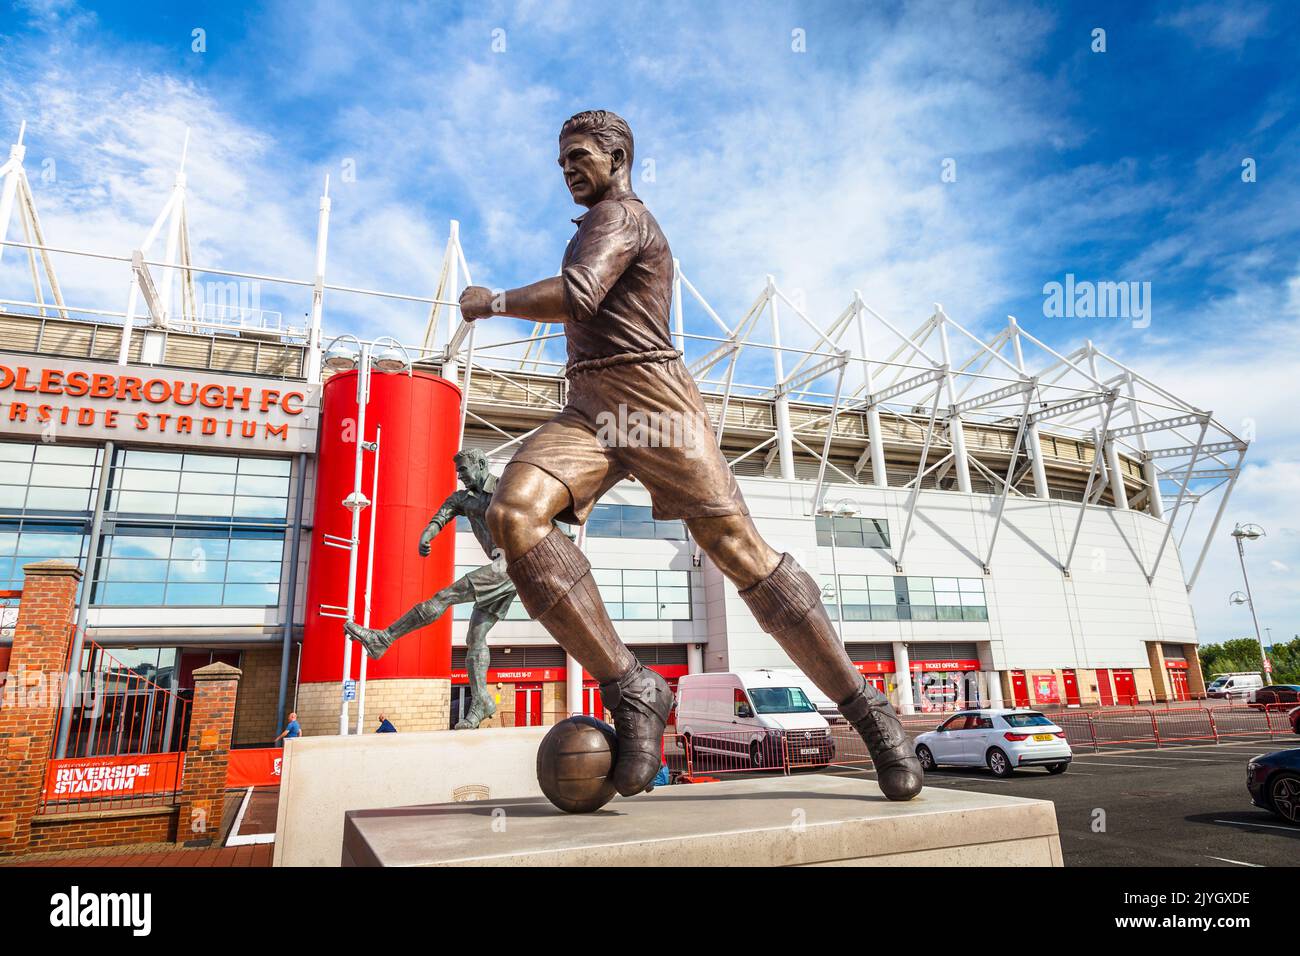 Middlesbrough, Reino Unido. Una estatua que conmemora la leyenda de Boro, George Camsell, fue oficialmente presentada en el Riverside Stadium recientemente. Él es el goleador líder de los clubes de todos los tiempos. David Dixon / Alamy Foto de stock